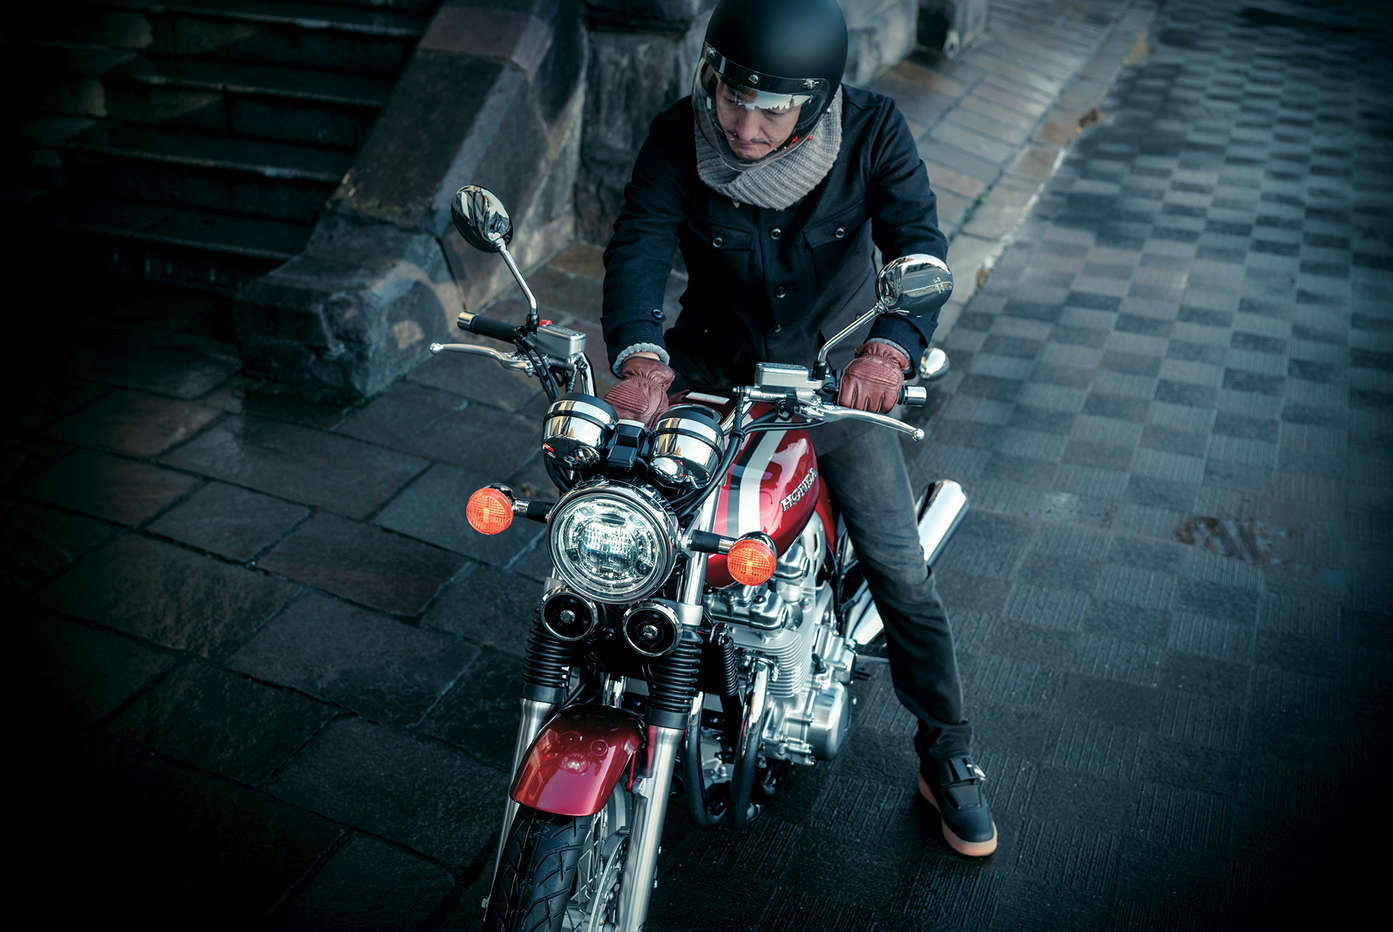 Honda CB1000EX